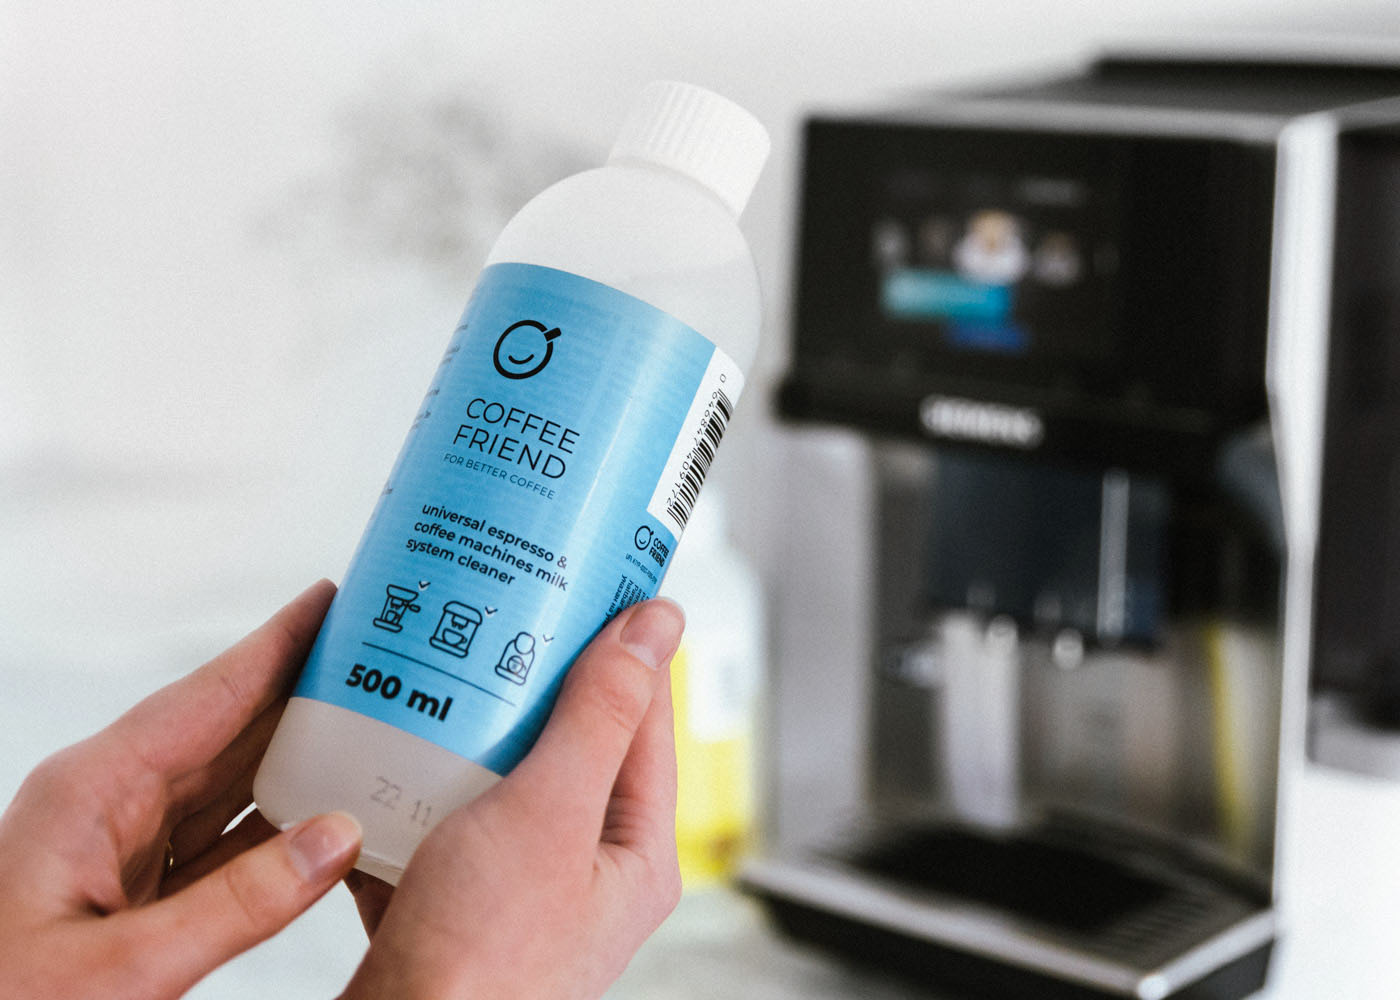 Espresso & coffee machine milk system cleaner